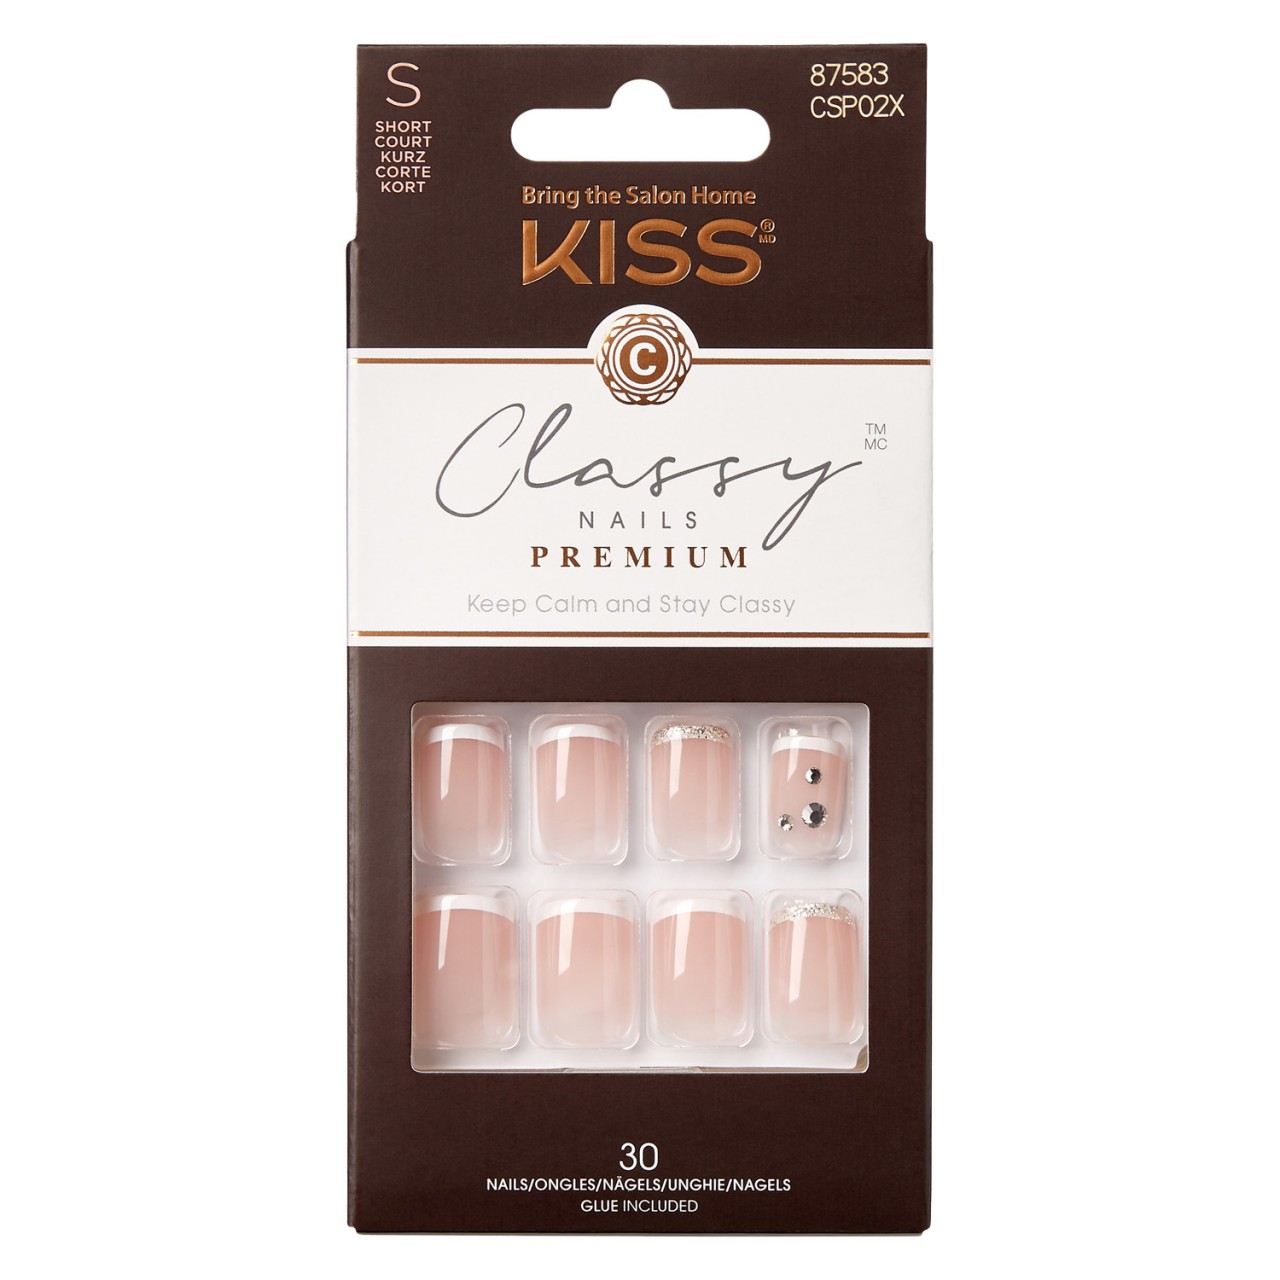 KISS Nails - Classy Premium Glitter French Gorgeous von KISS